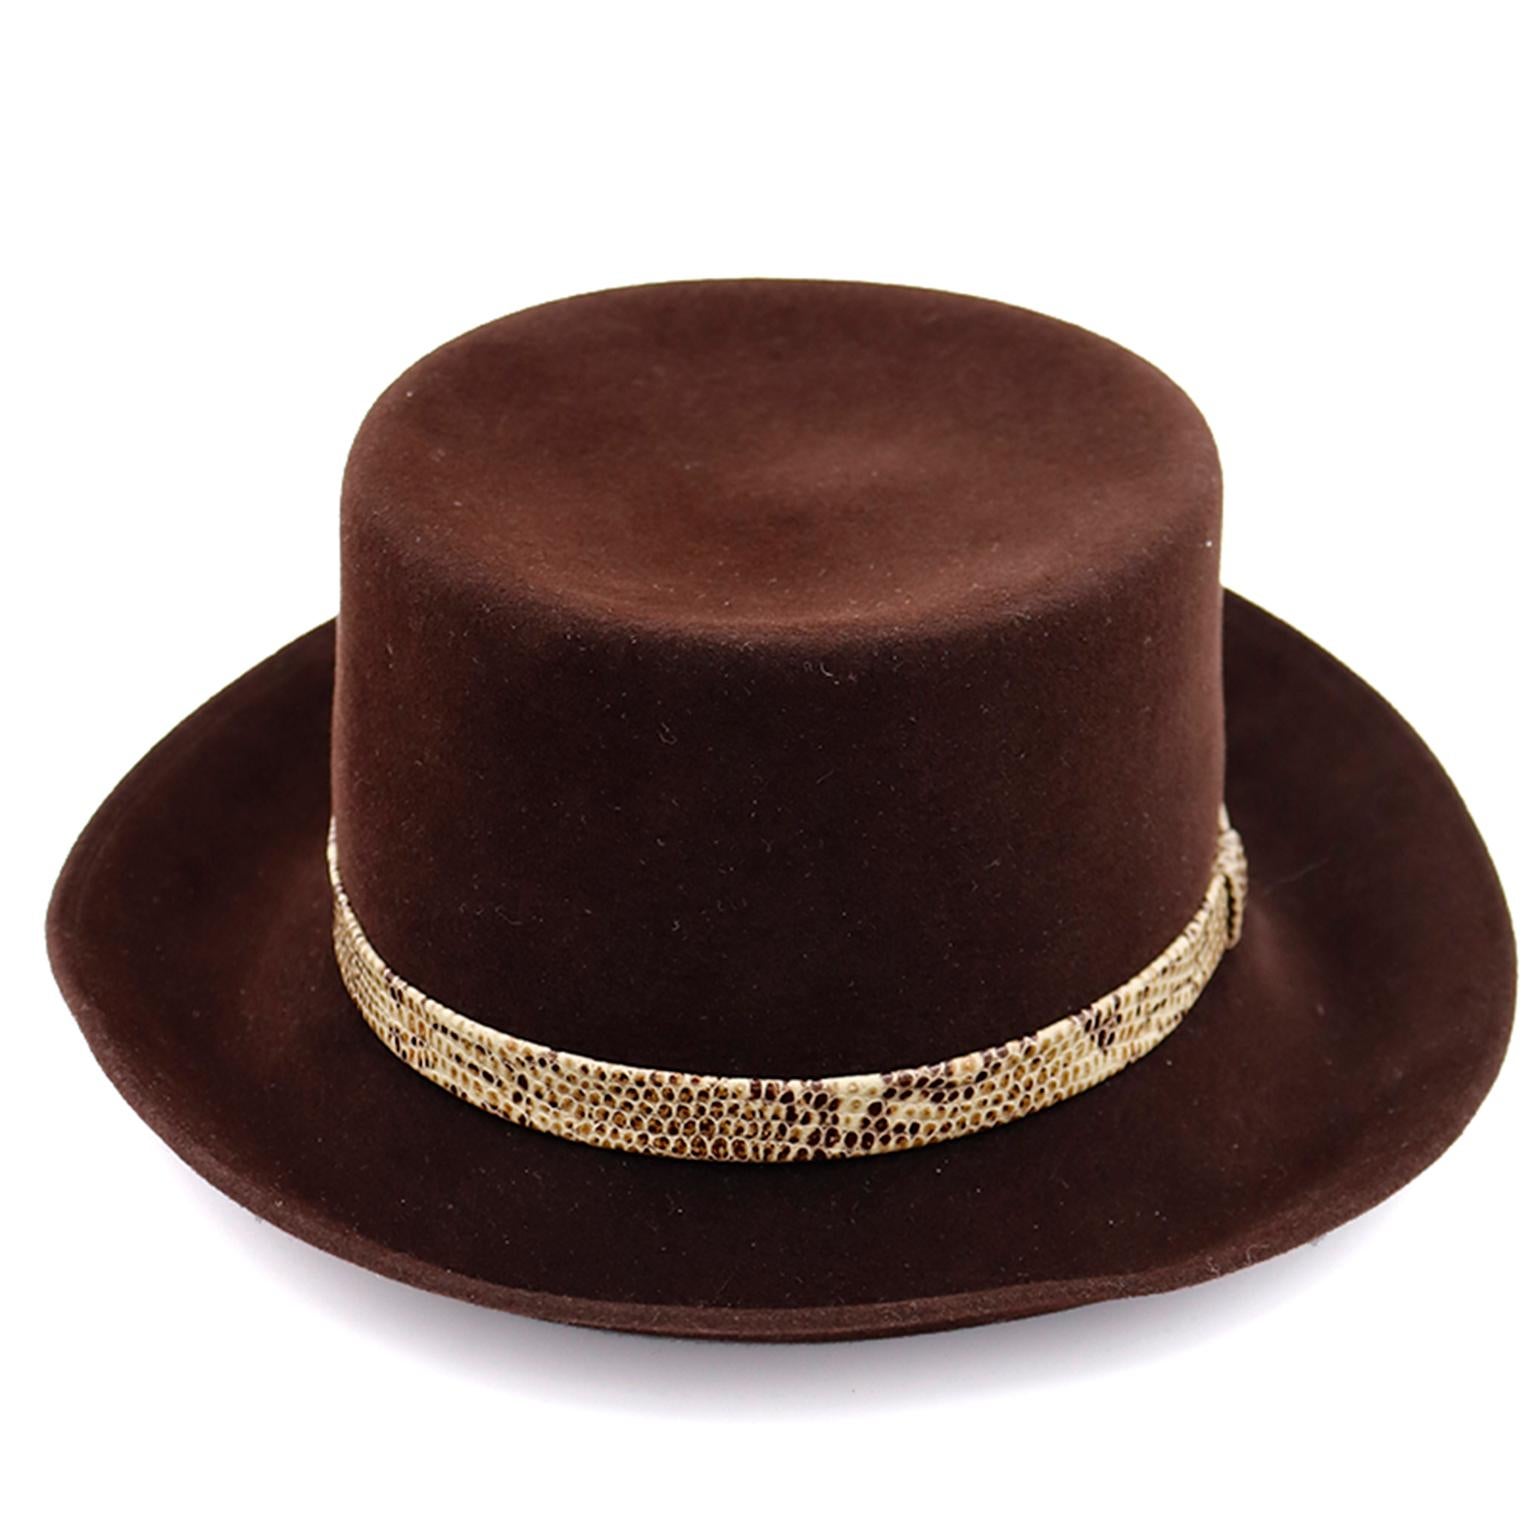 Dies ist eine schöne Vintage Patricia Underwood dunkelbraune Wolle Hut mit einem schmalen Schlangenhaut Band. Die Hüte von Patricia Underwood gehören zu den schönsten, und sie sind so gut gemacht. 
INNENMASS: 22